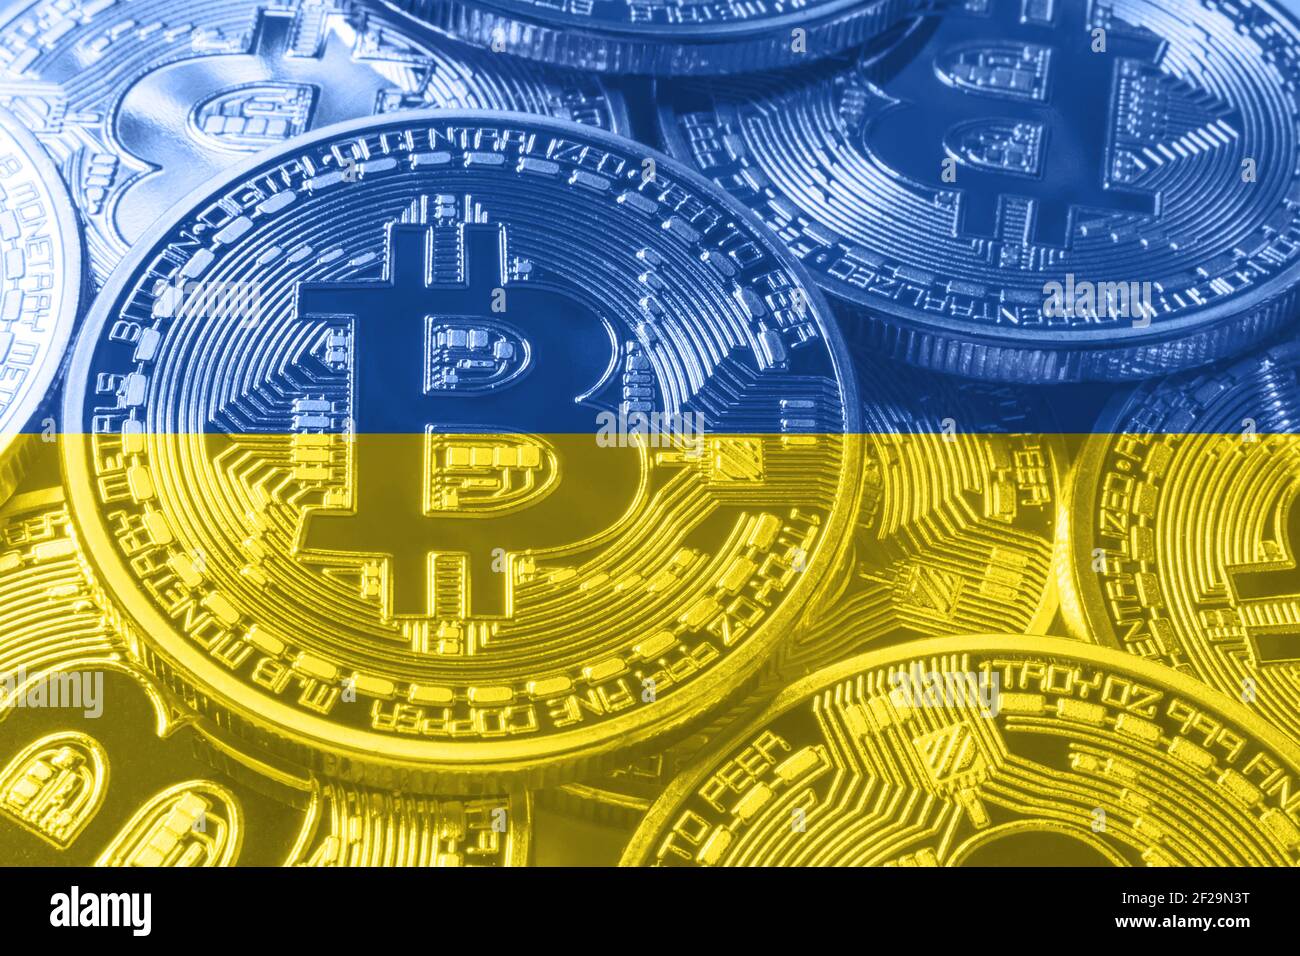 Bitcoin на украине wmcash24.com отзывы